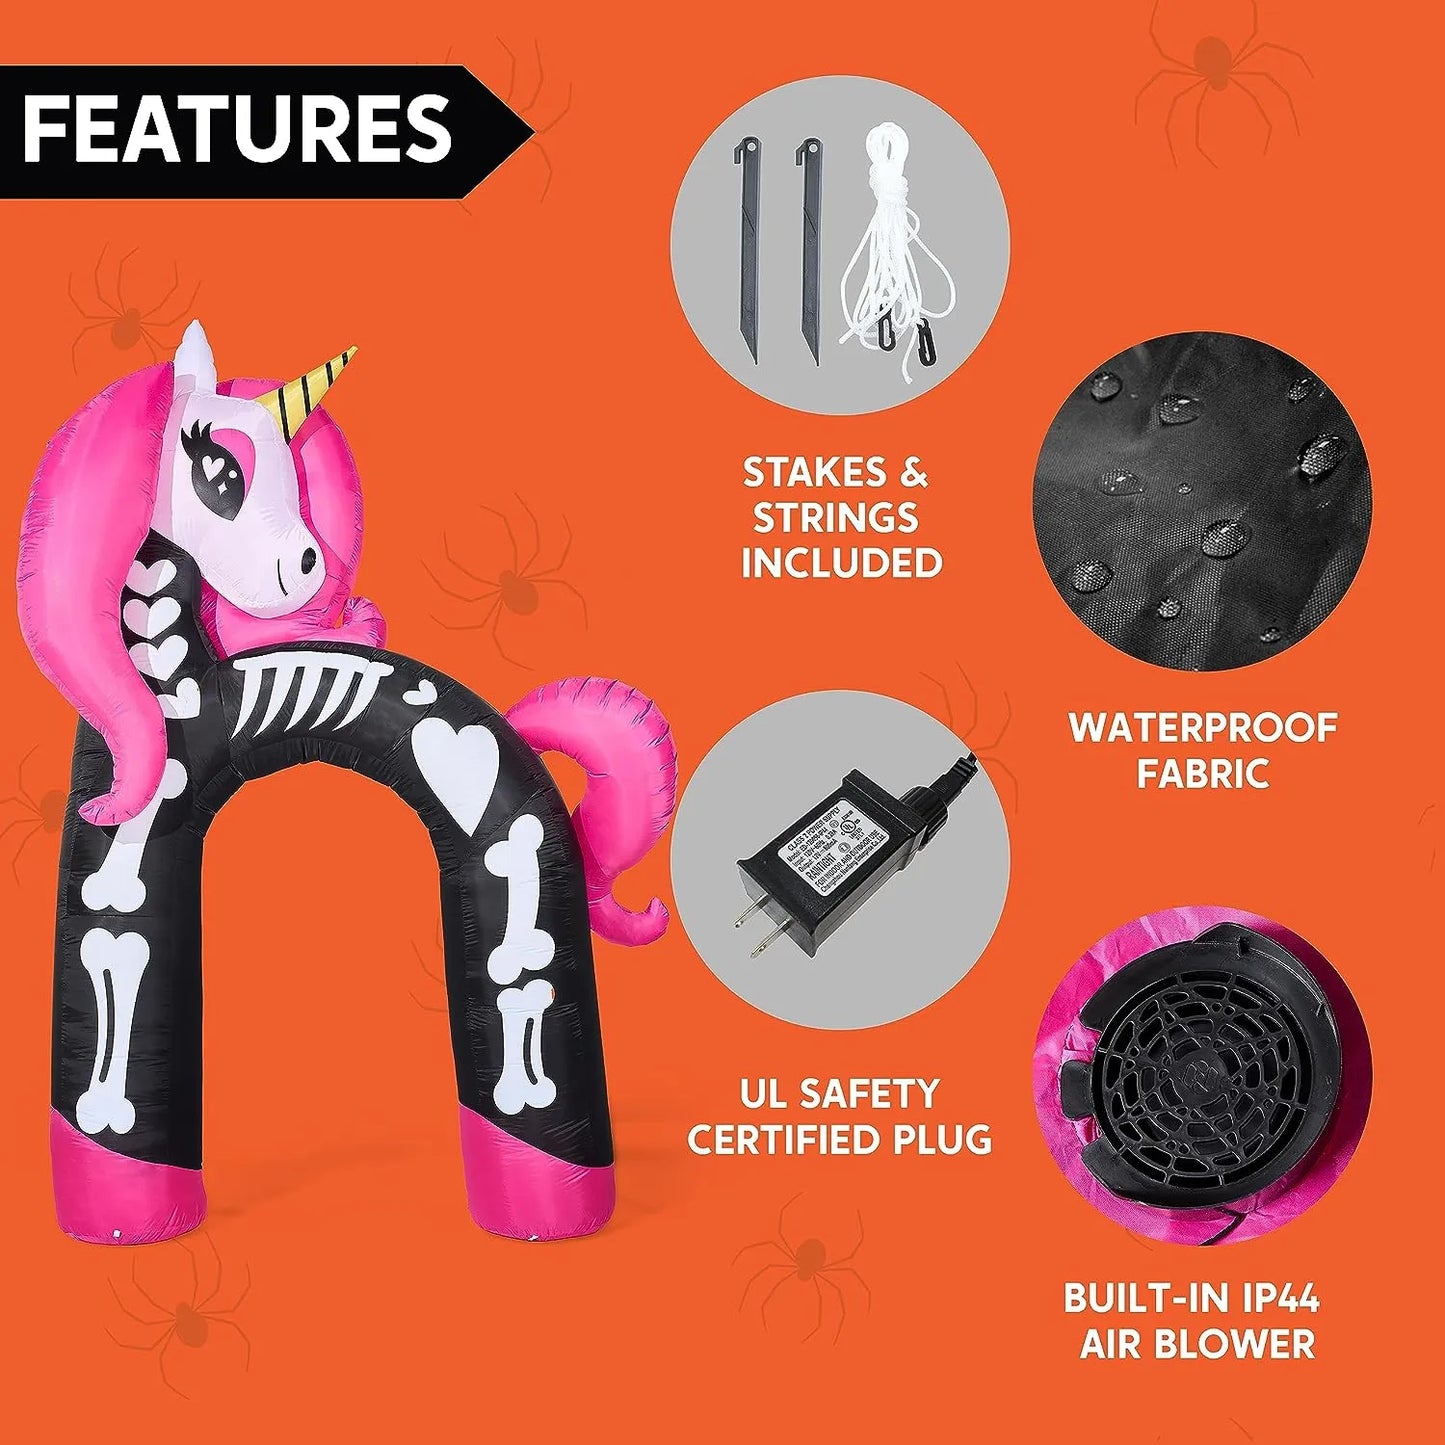 Joeidomi 12ft Rainbow Skeleton Unicorn Arch LED Halloween Inflatable